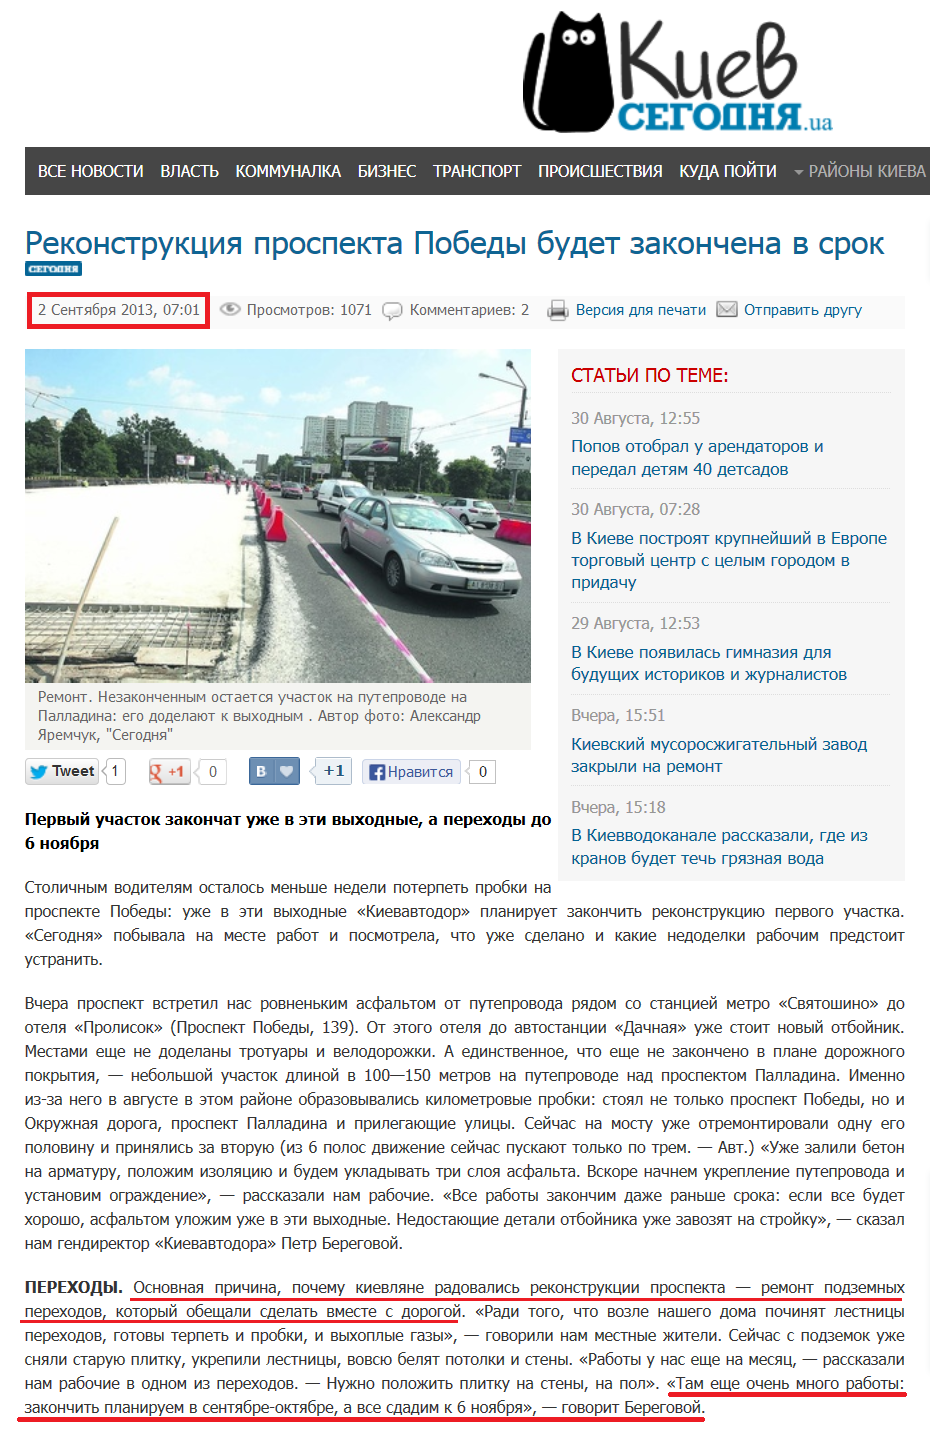 http://kiev.segodnya.ua/kommunalka/Rekonstrukciya-prospekta-Pobedy-budet-zakonchena-v-srok-457606.html